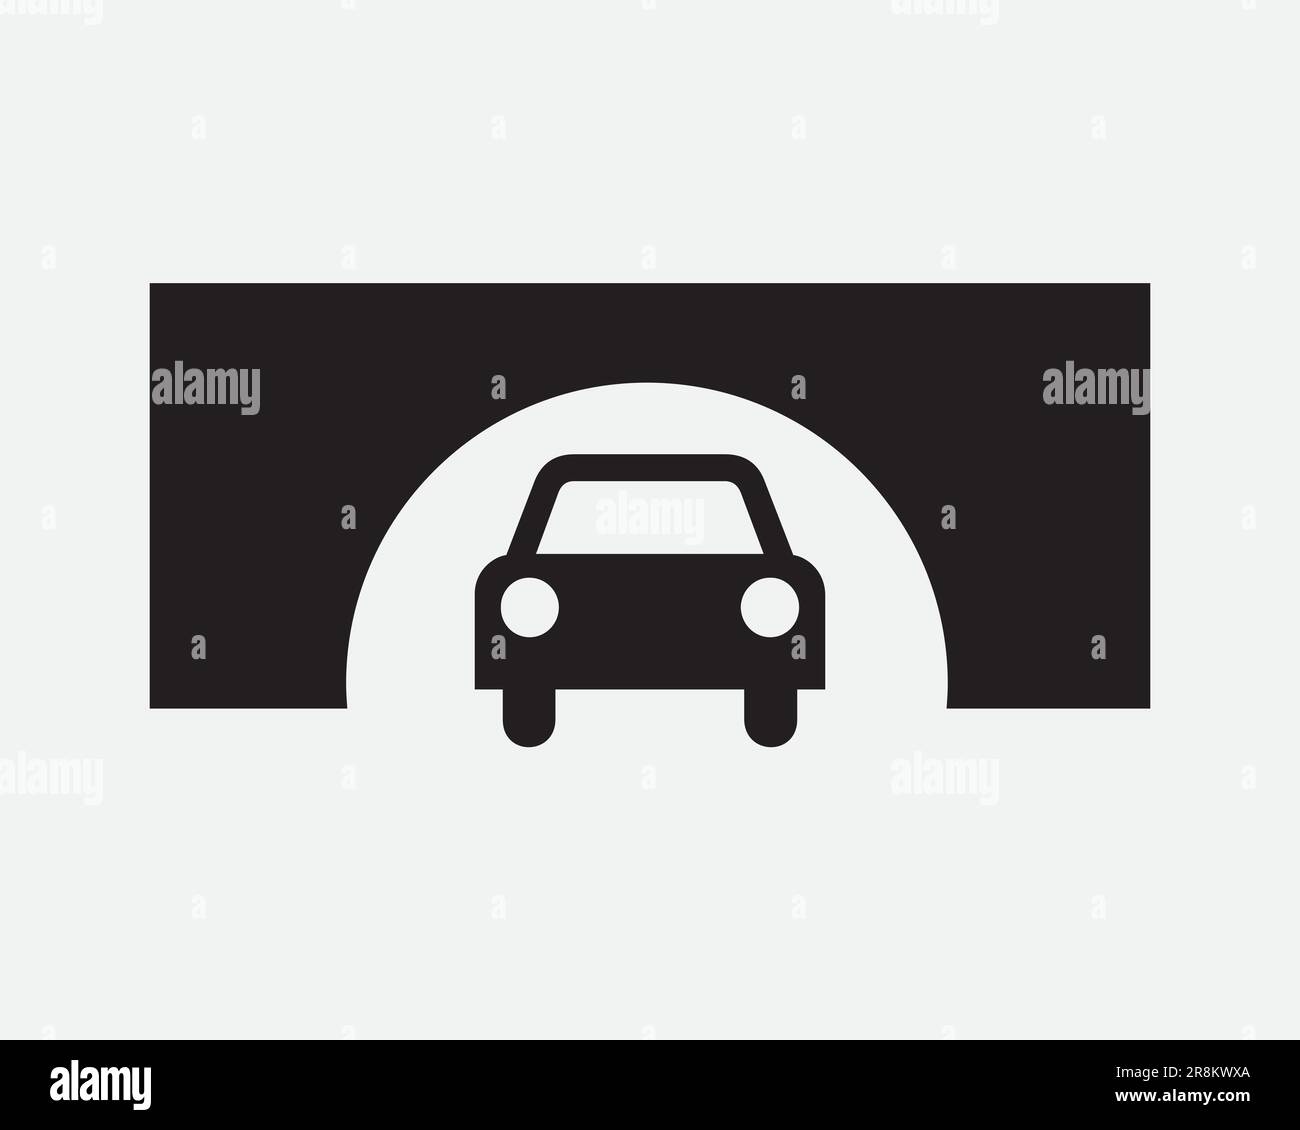 Icône de sortie du tunnel de voiture. Pont Arch sous la structure de circulation routière panneau noir et blanc Illustration Illustration graphique Clipart EPS Vector Illustration de Vecteur